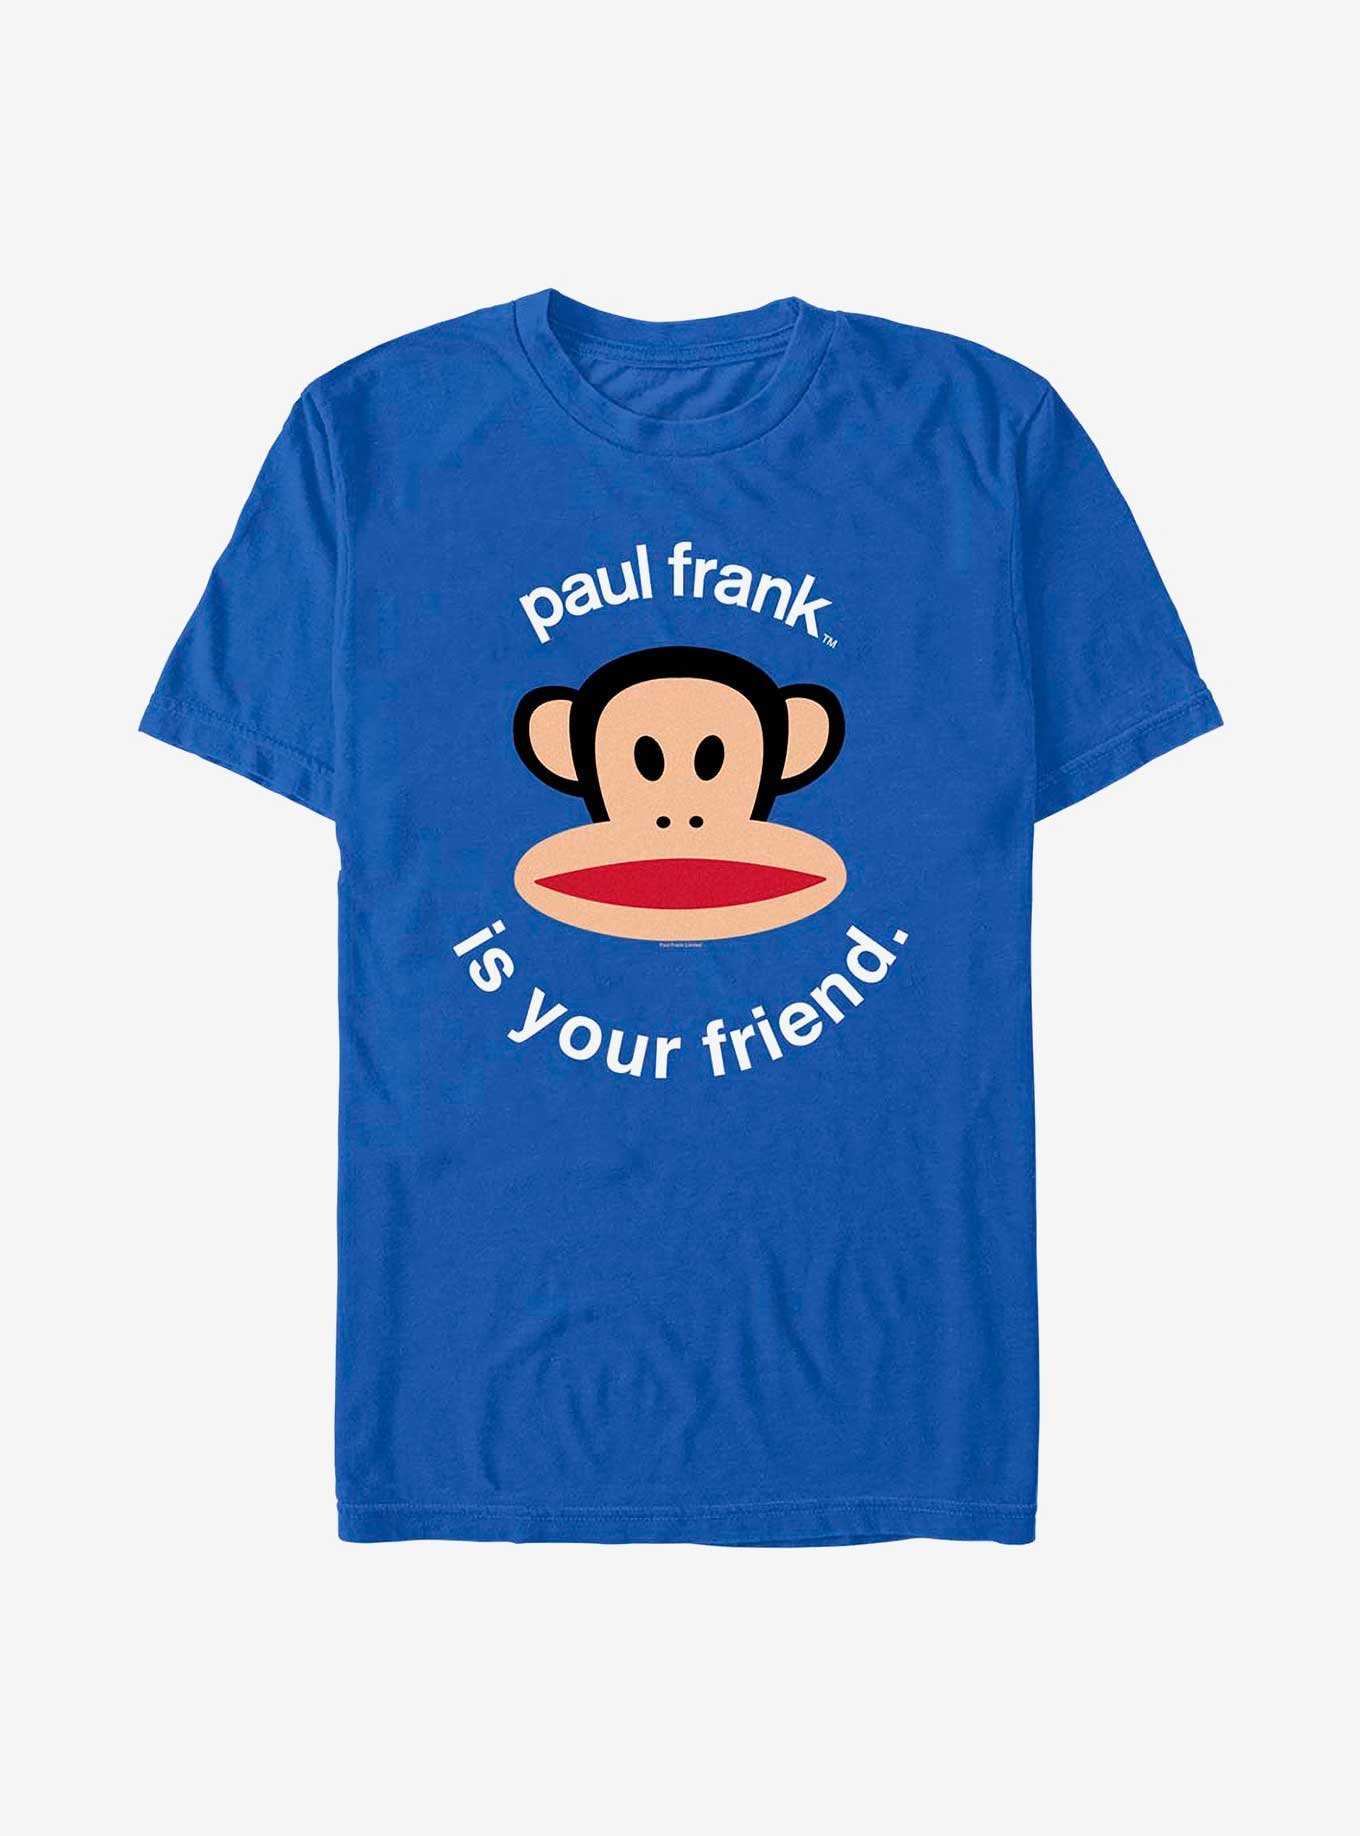 Paul Frank Is Your Friend T-Shirt, , hi-res